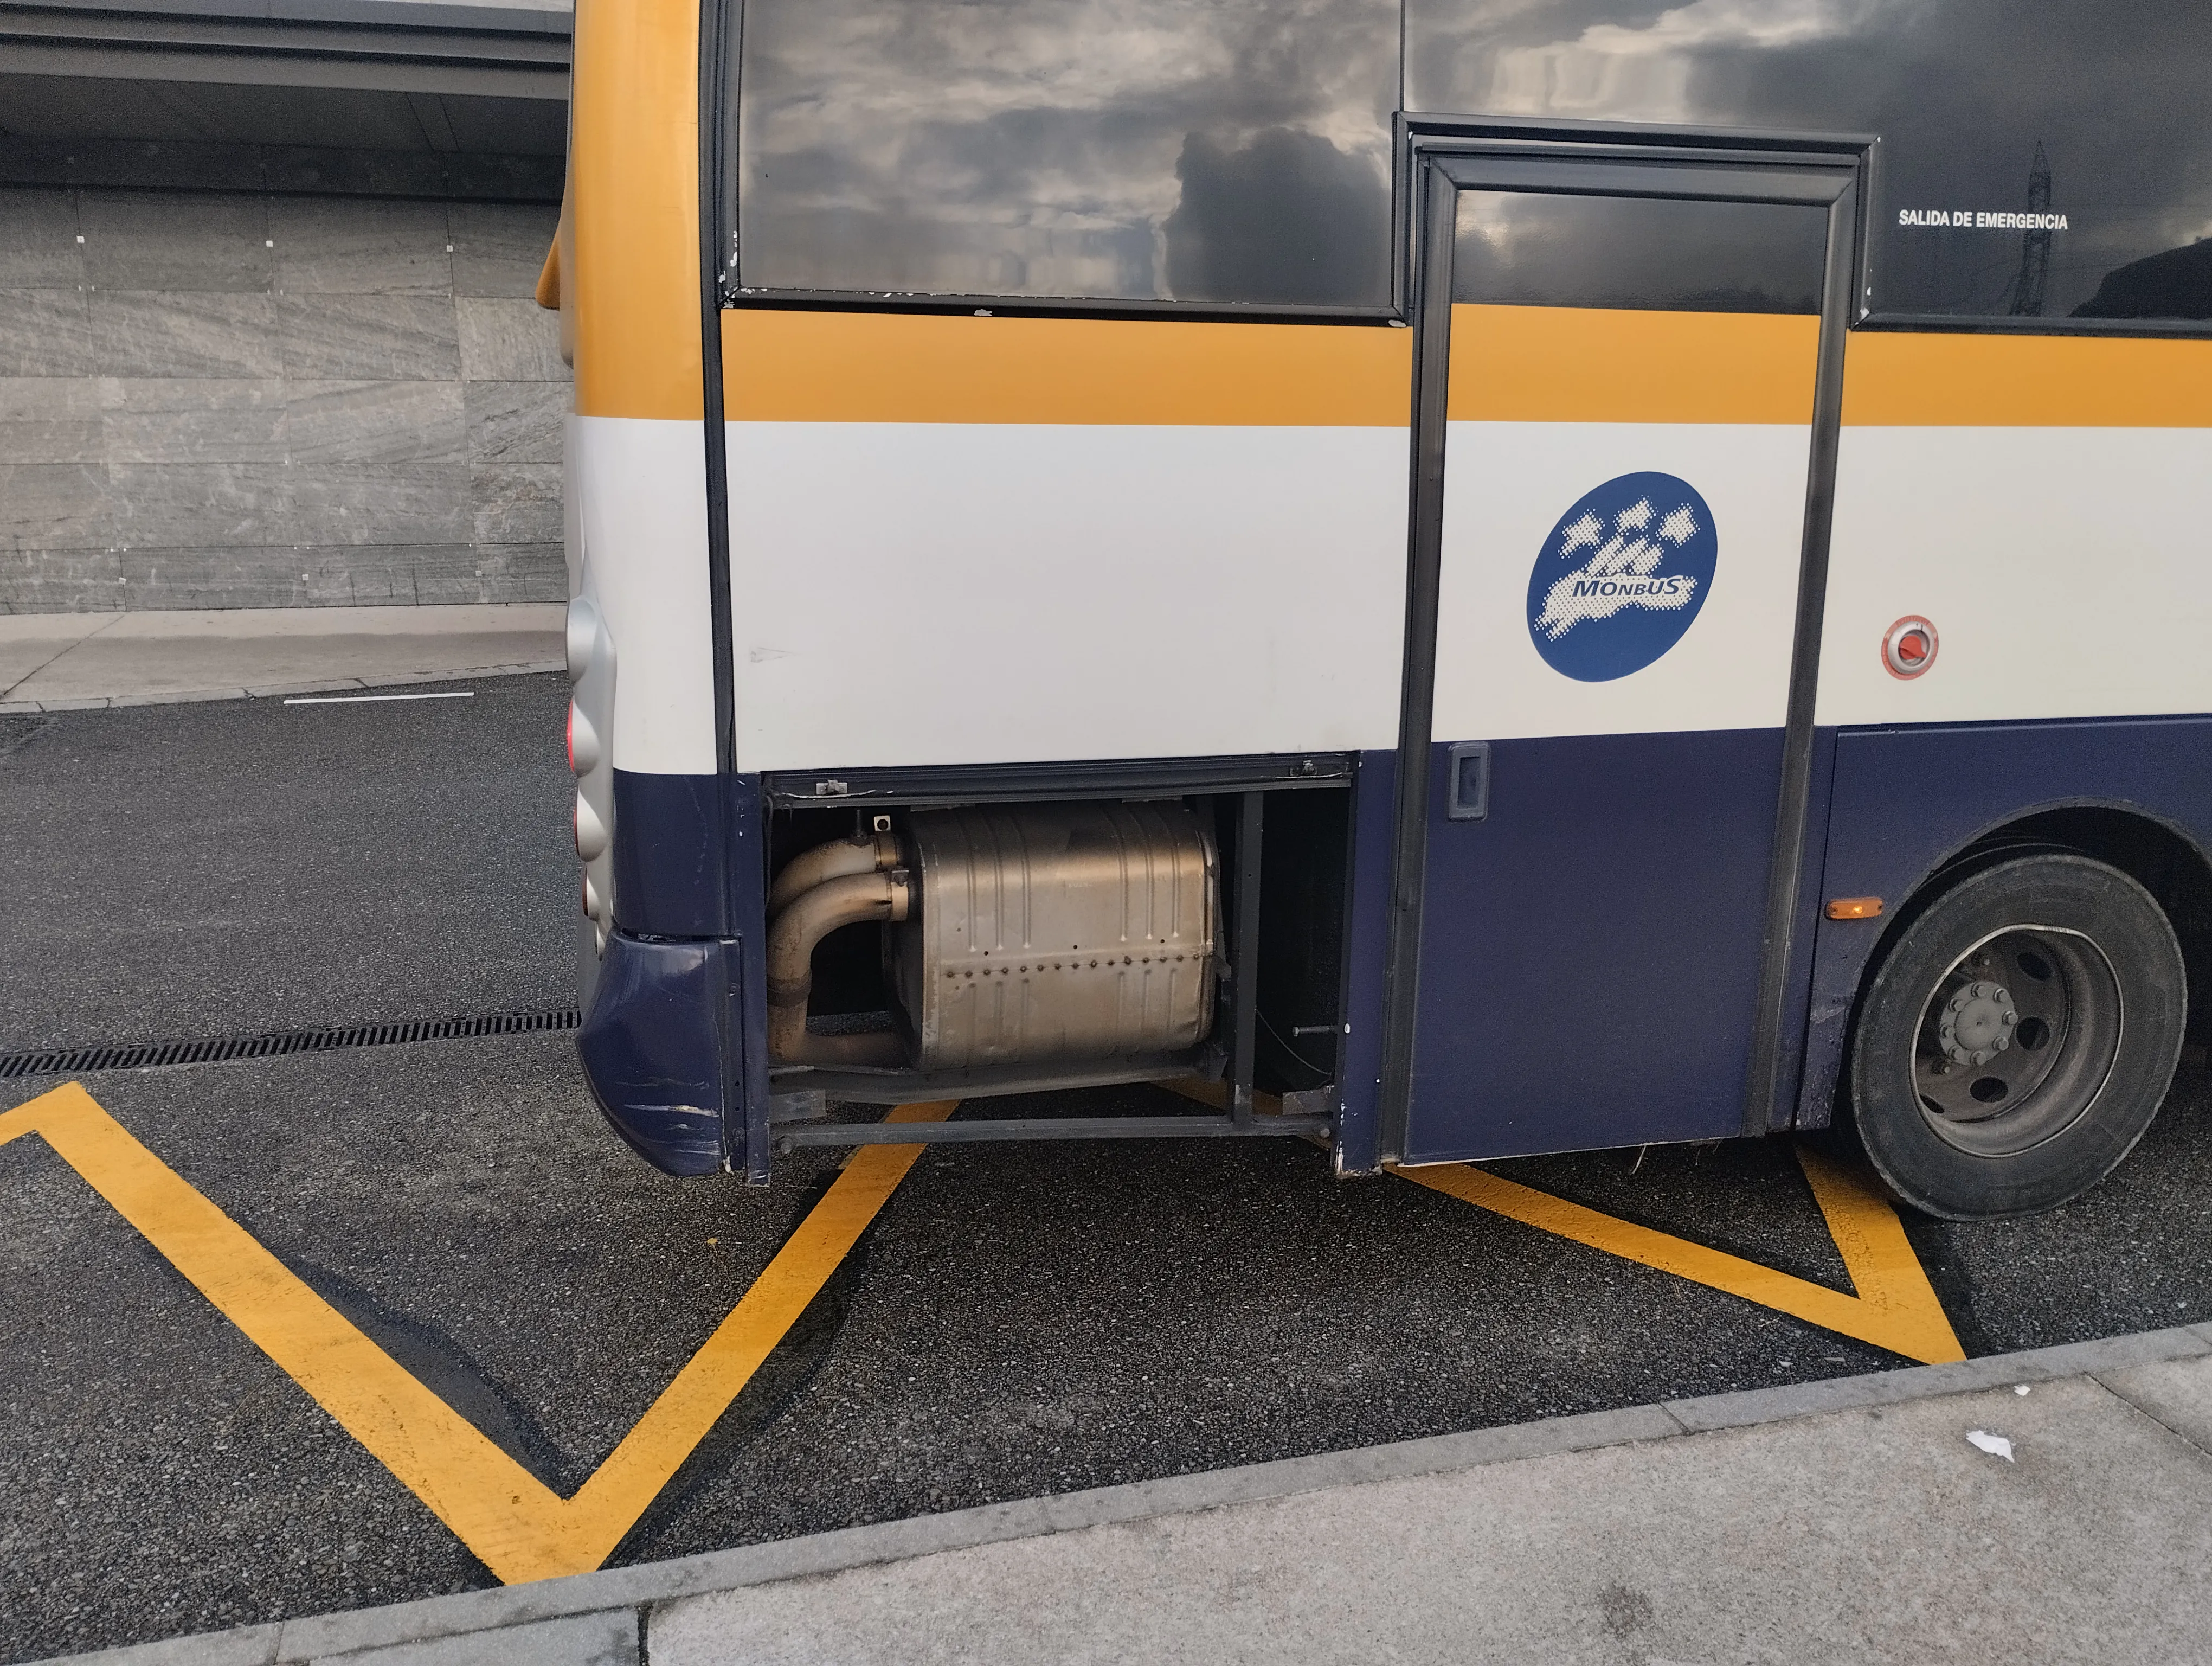 Monbus prestando servicio regular con este autobús al que le falta un trozo de carrocería. Y así durante meses. Esto en Ojea (ni en muchas empresas) no pasa